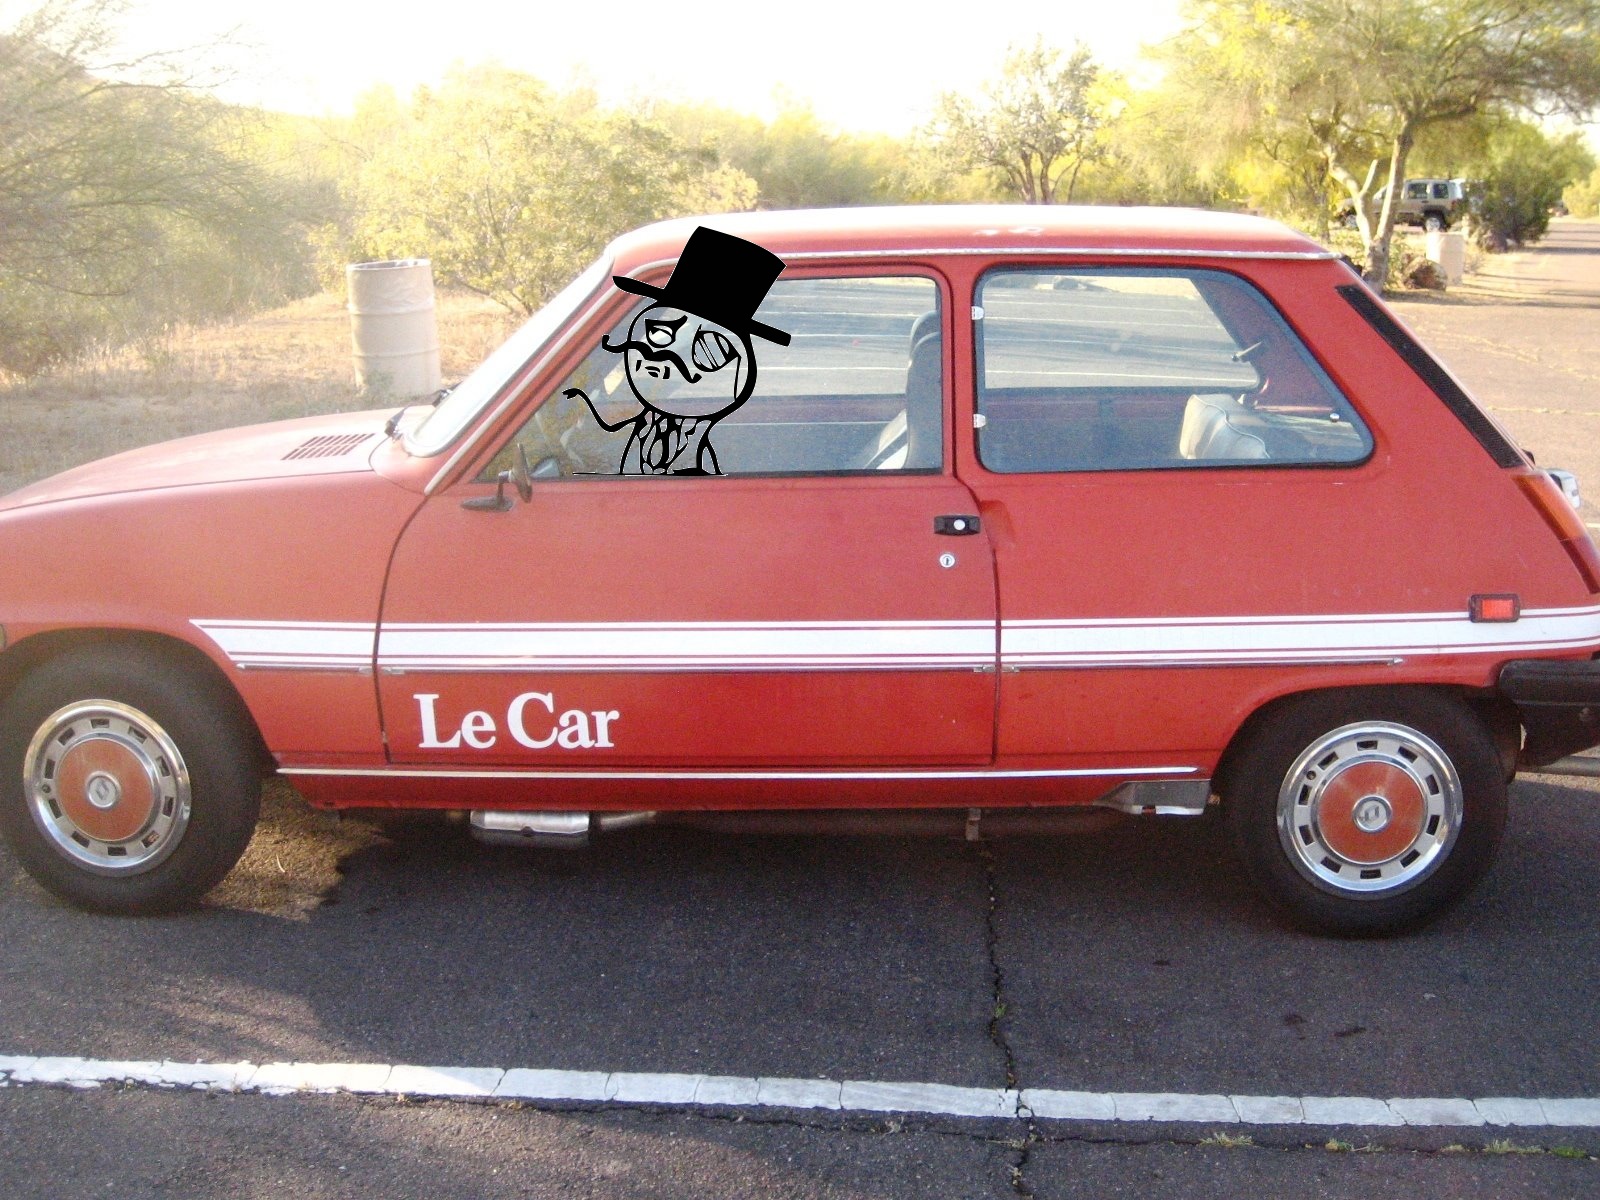 Le car for Le Sir